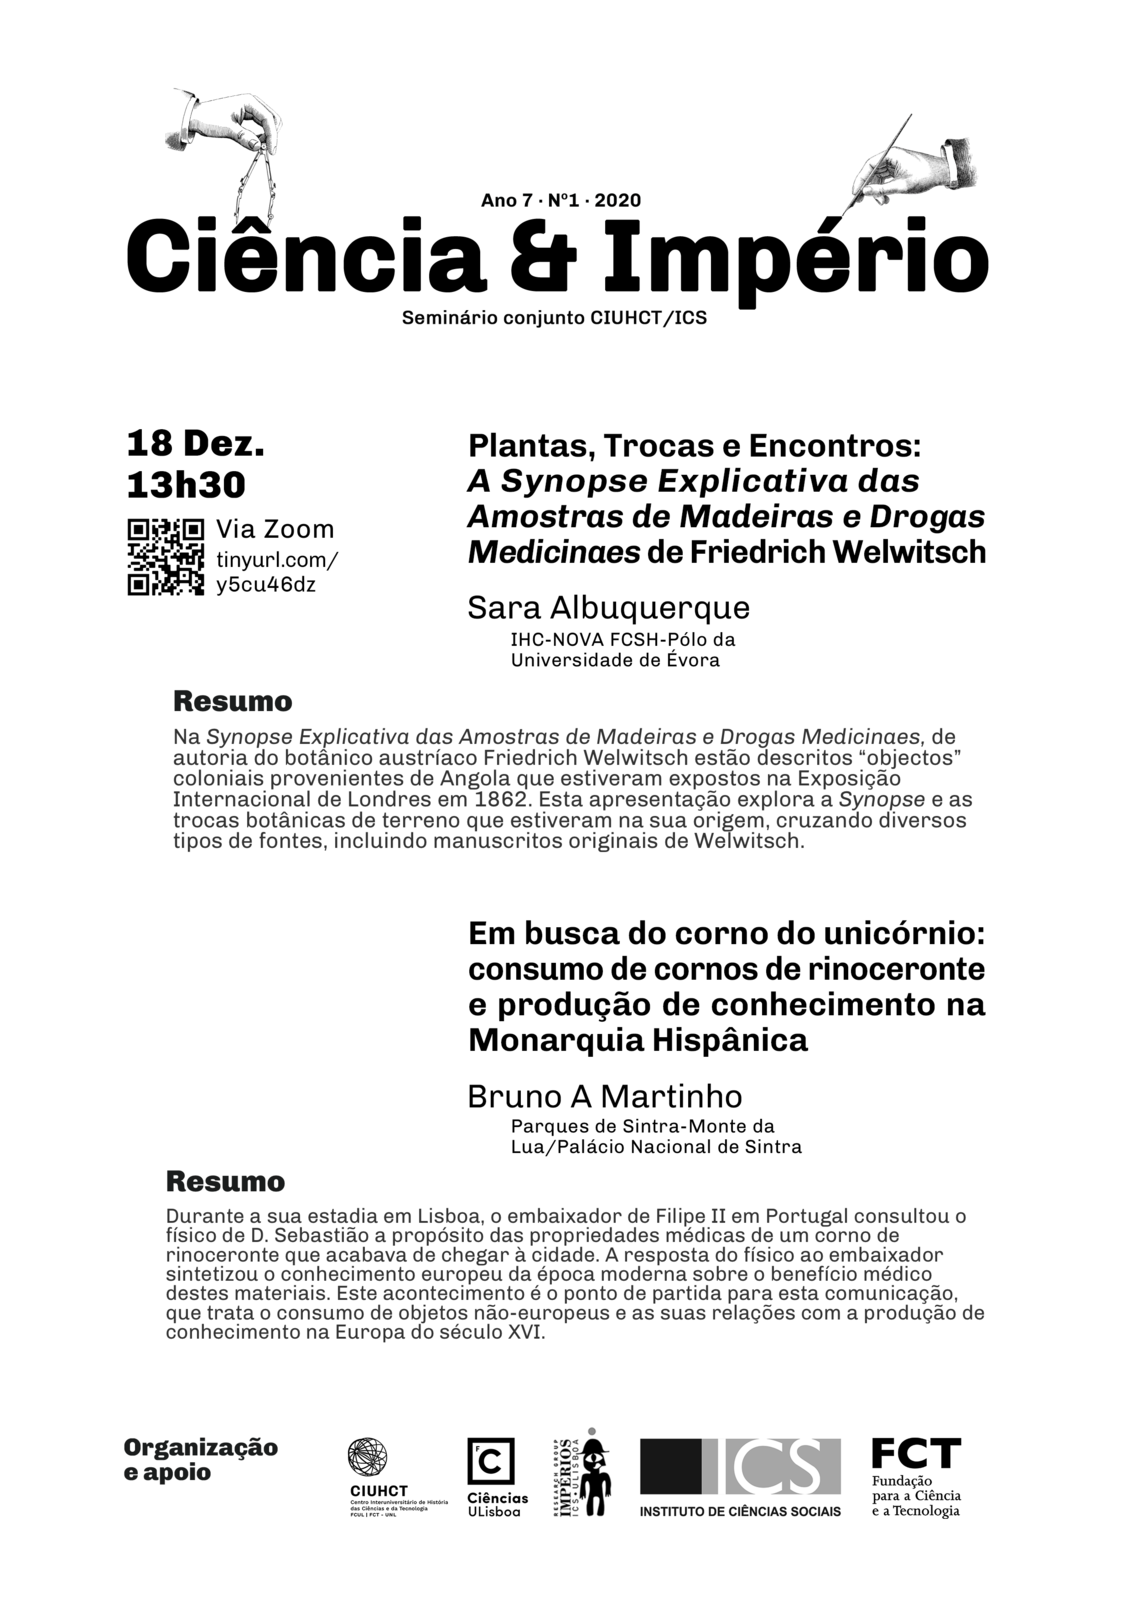 Cartaz_Ciencia_e_Imperio_18_Dez_2020.png